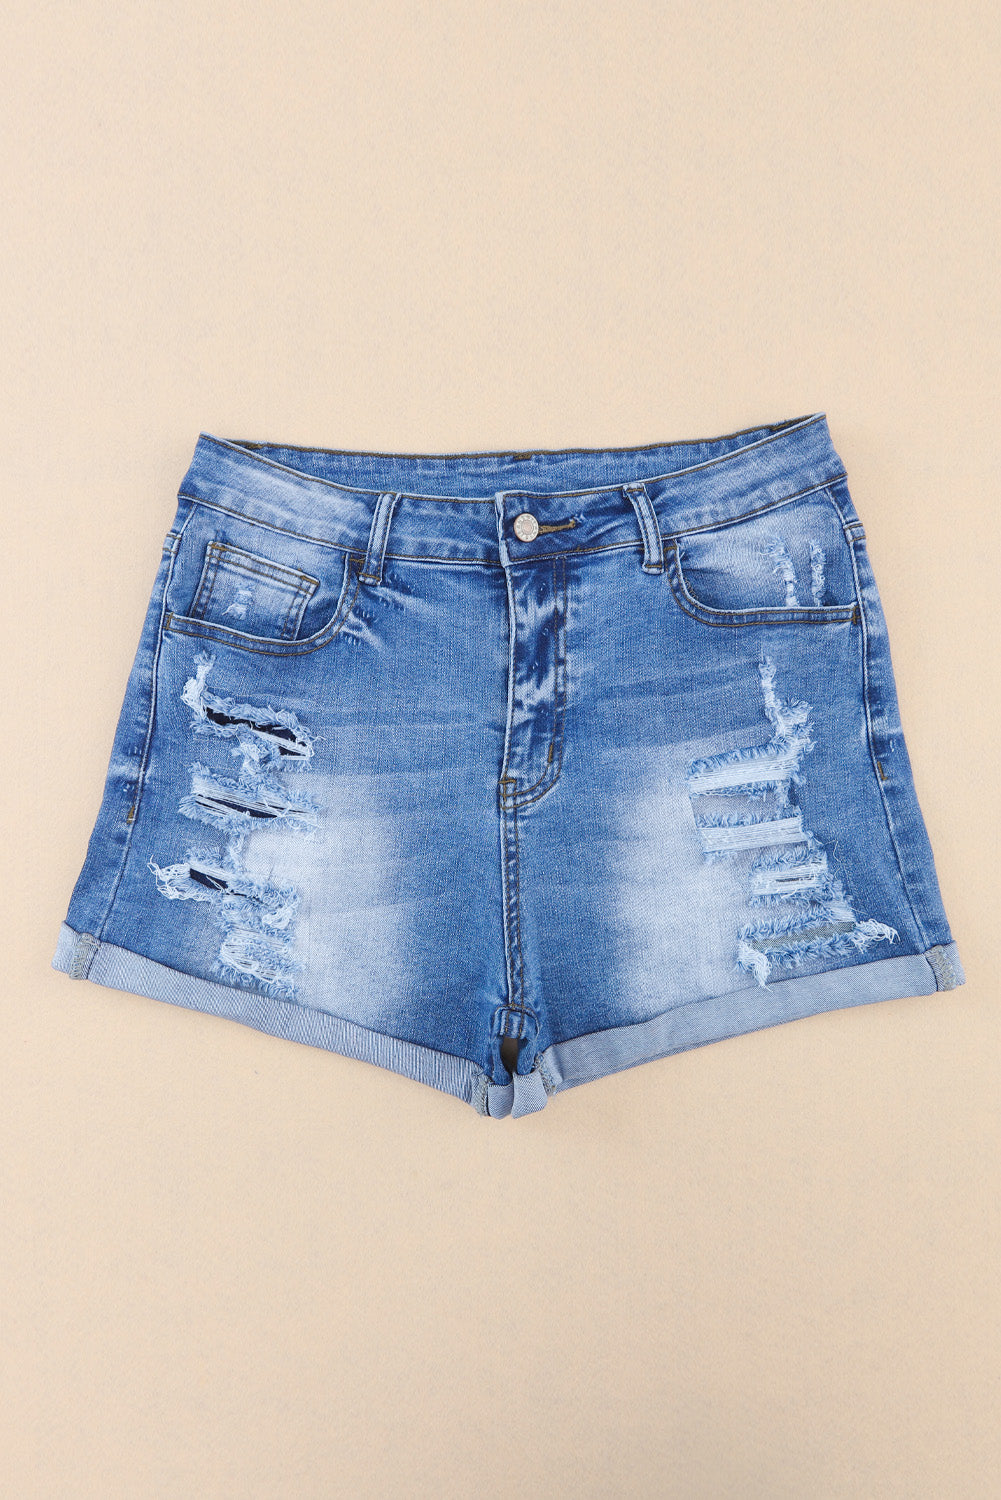 Sky Blue Vintage Distressed High Waist Pocket Denim Shorts